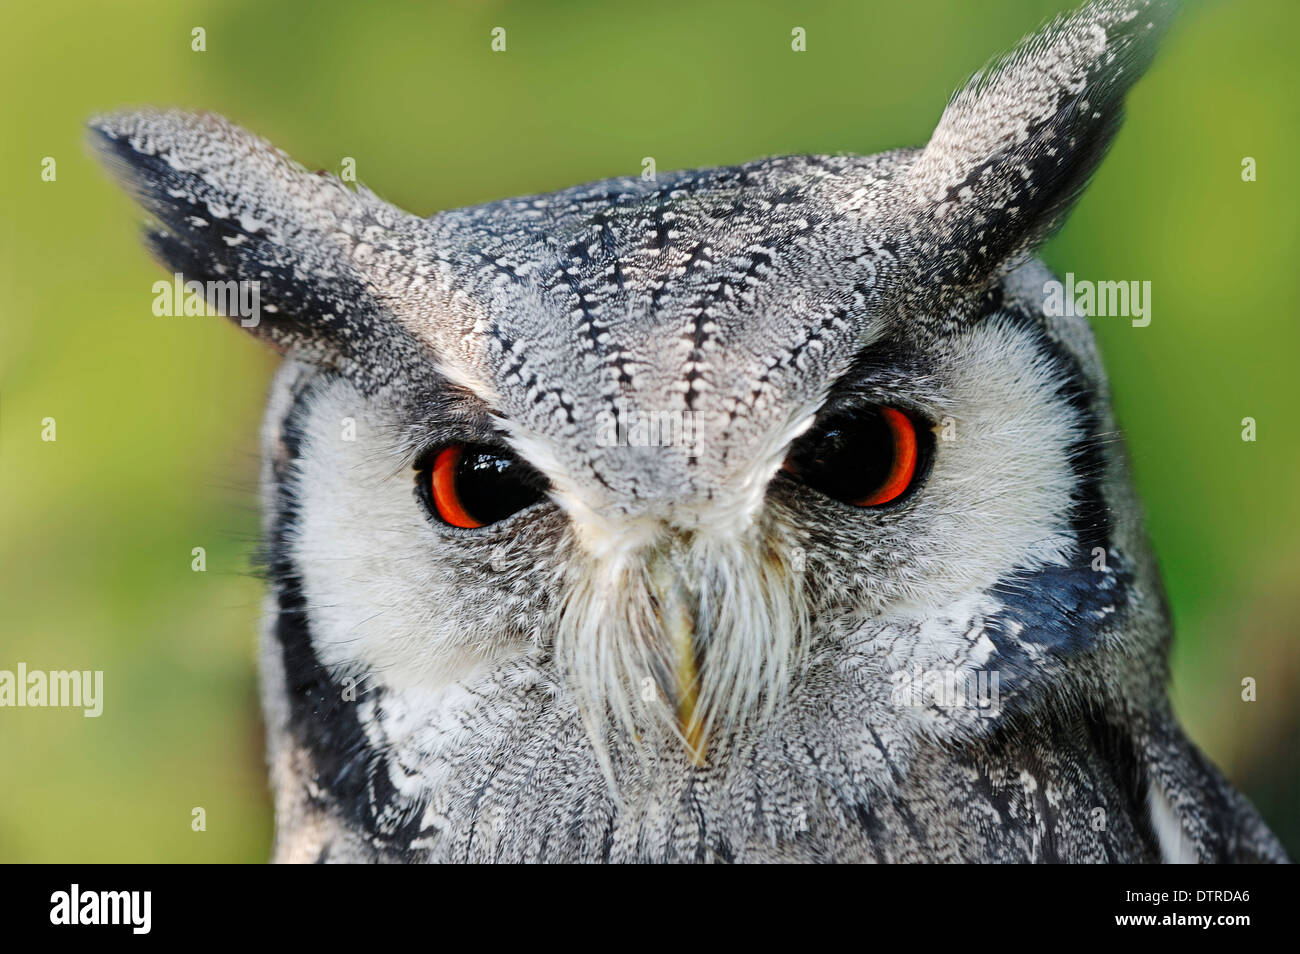 Northern White-faced Owl / (Ptilopsis leucotis, Otus leucotis) / White-faced Scops Owl Stock Photo